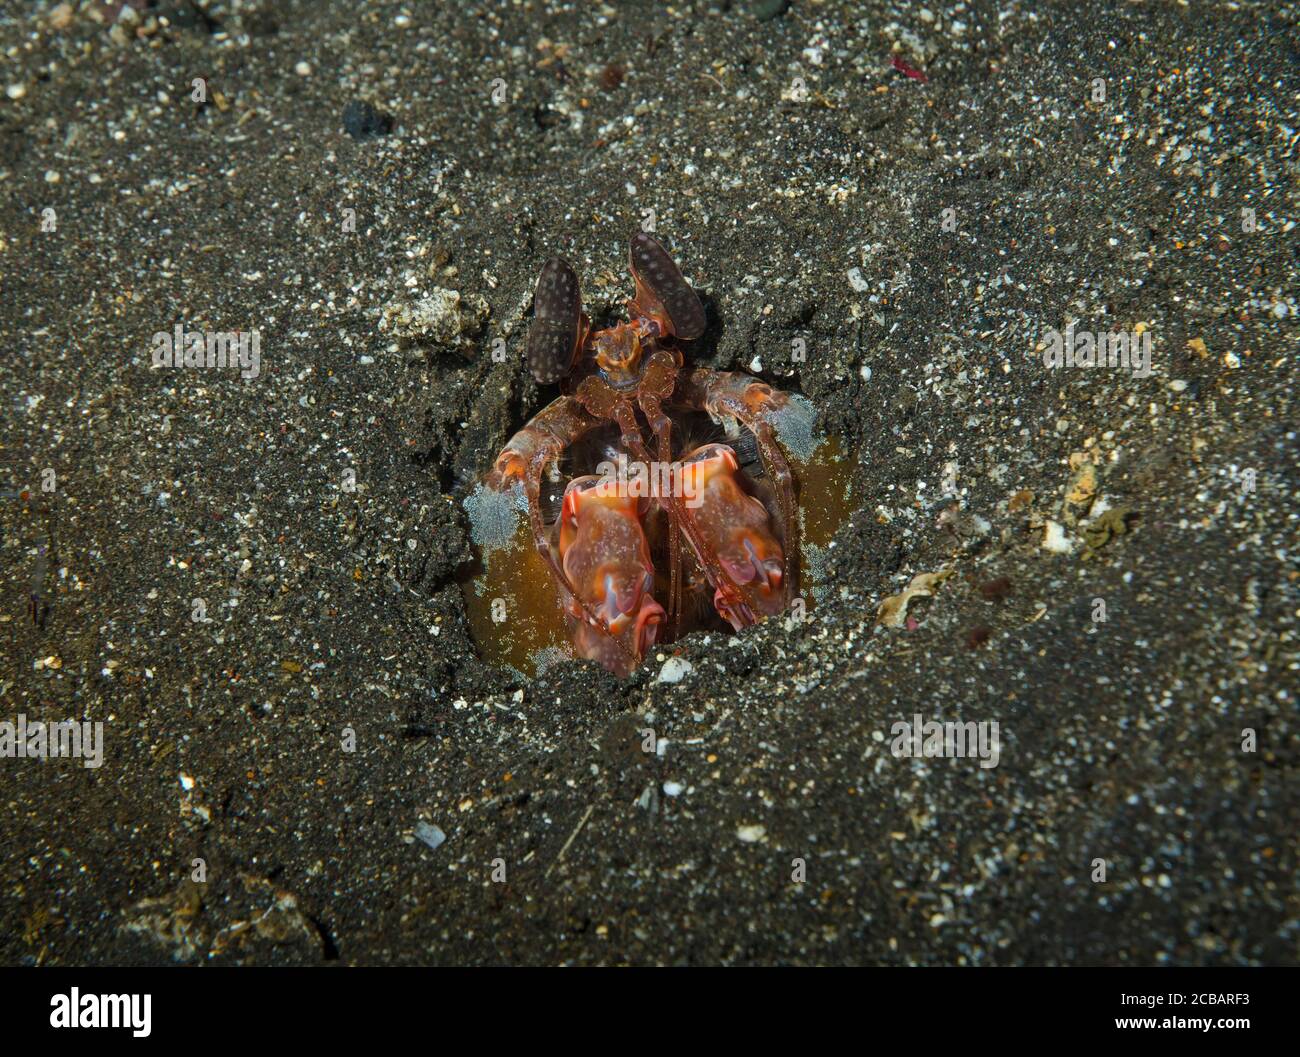 La crevette Mantis de Spearing, Lysiosquillina lisa, cachée dans le sable volcanique, tulamben, Bali, Indonésie Banque D'Images